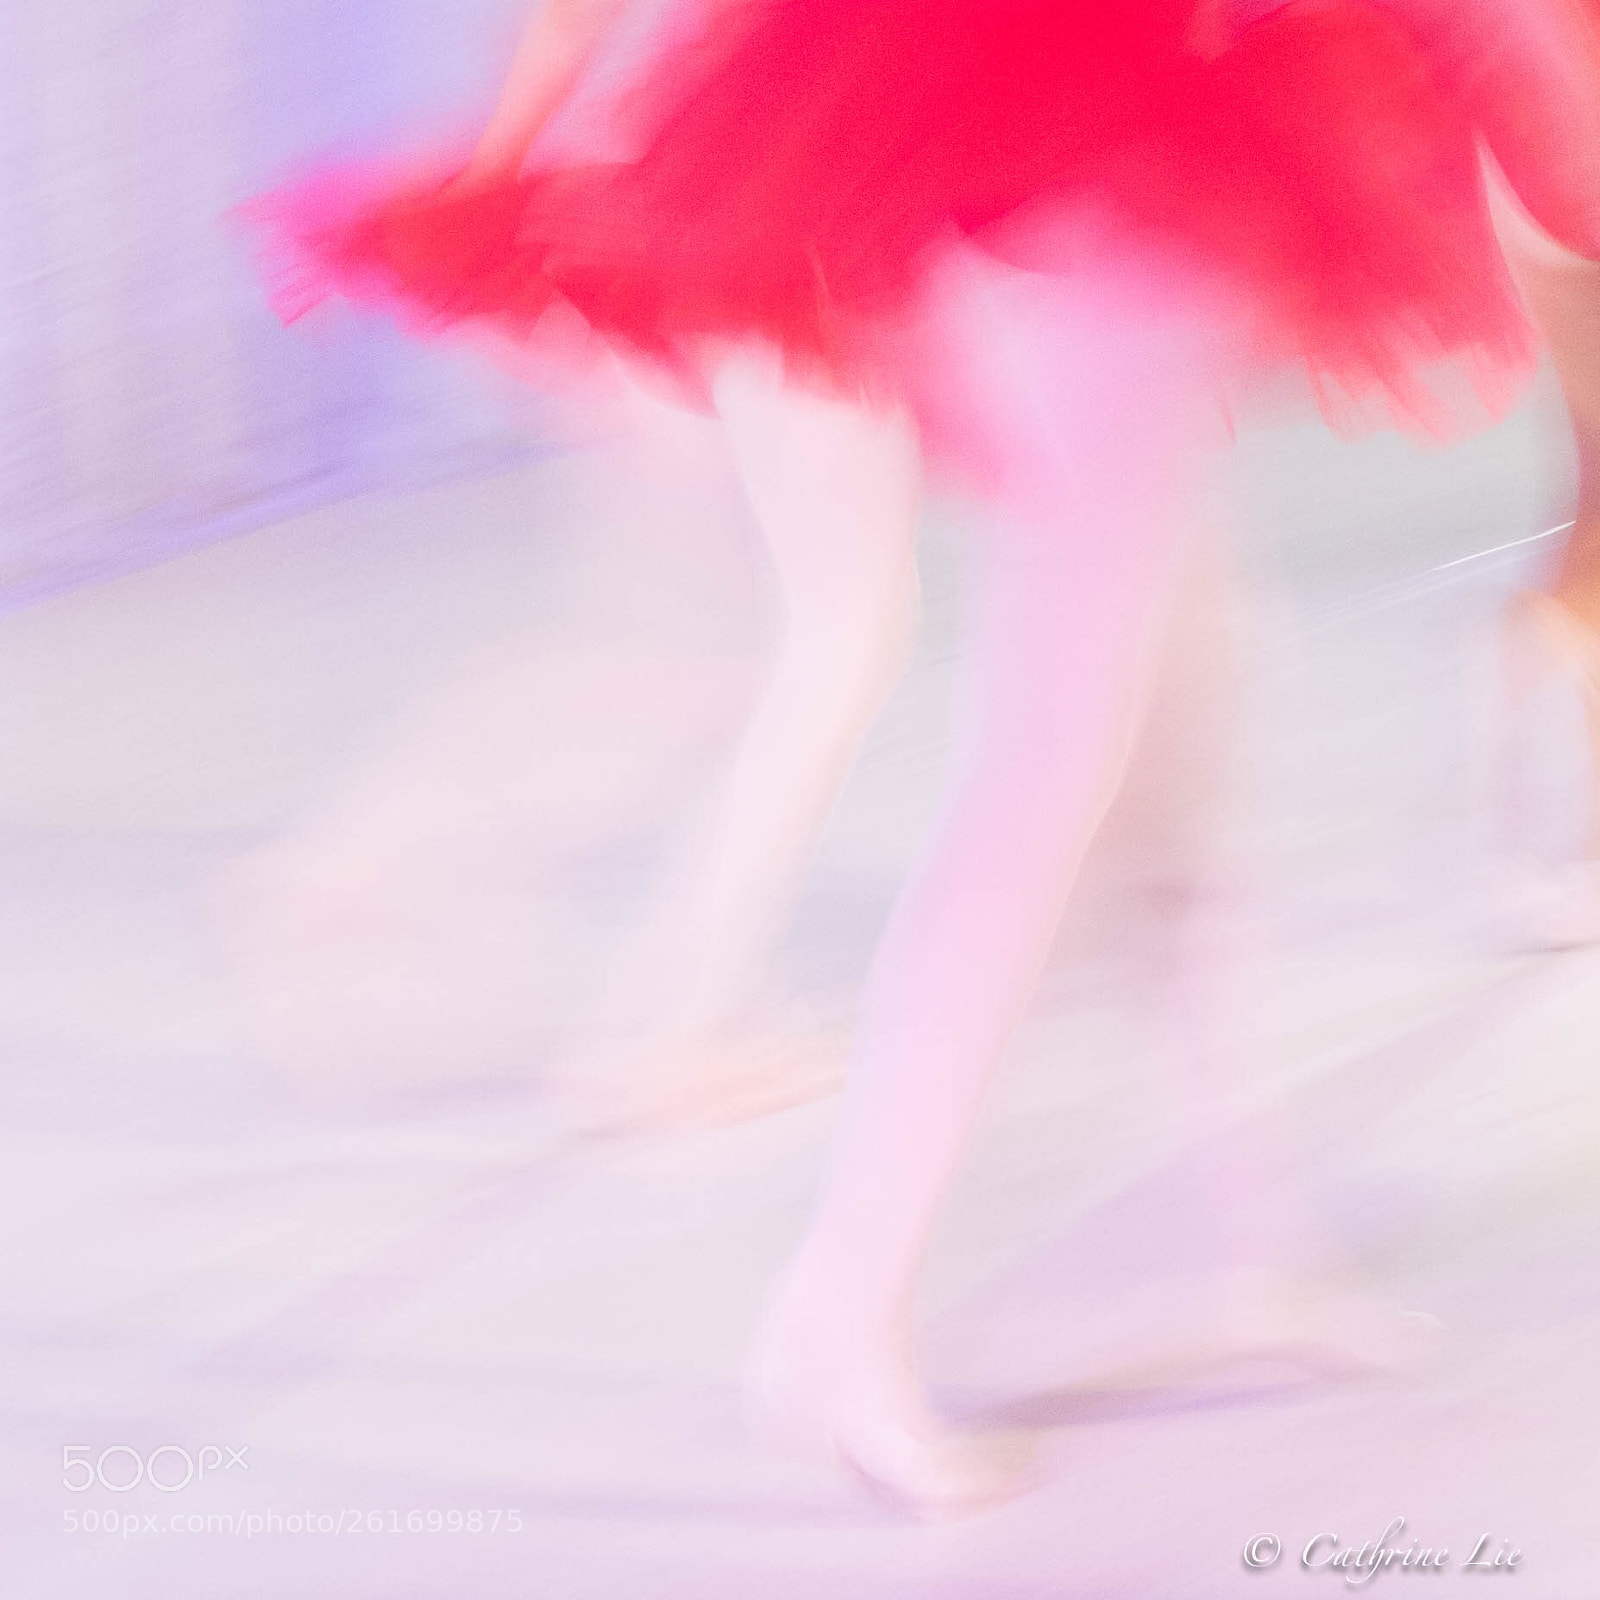 Nikon D810 sample photo. Ballerinas photography